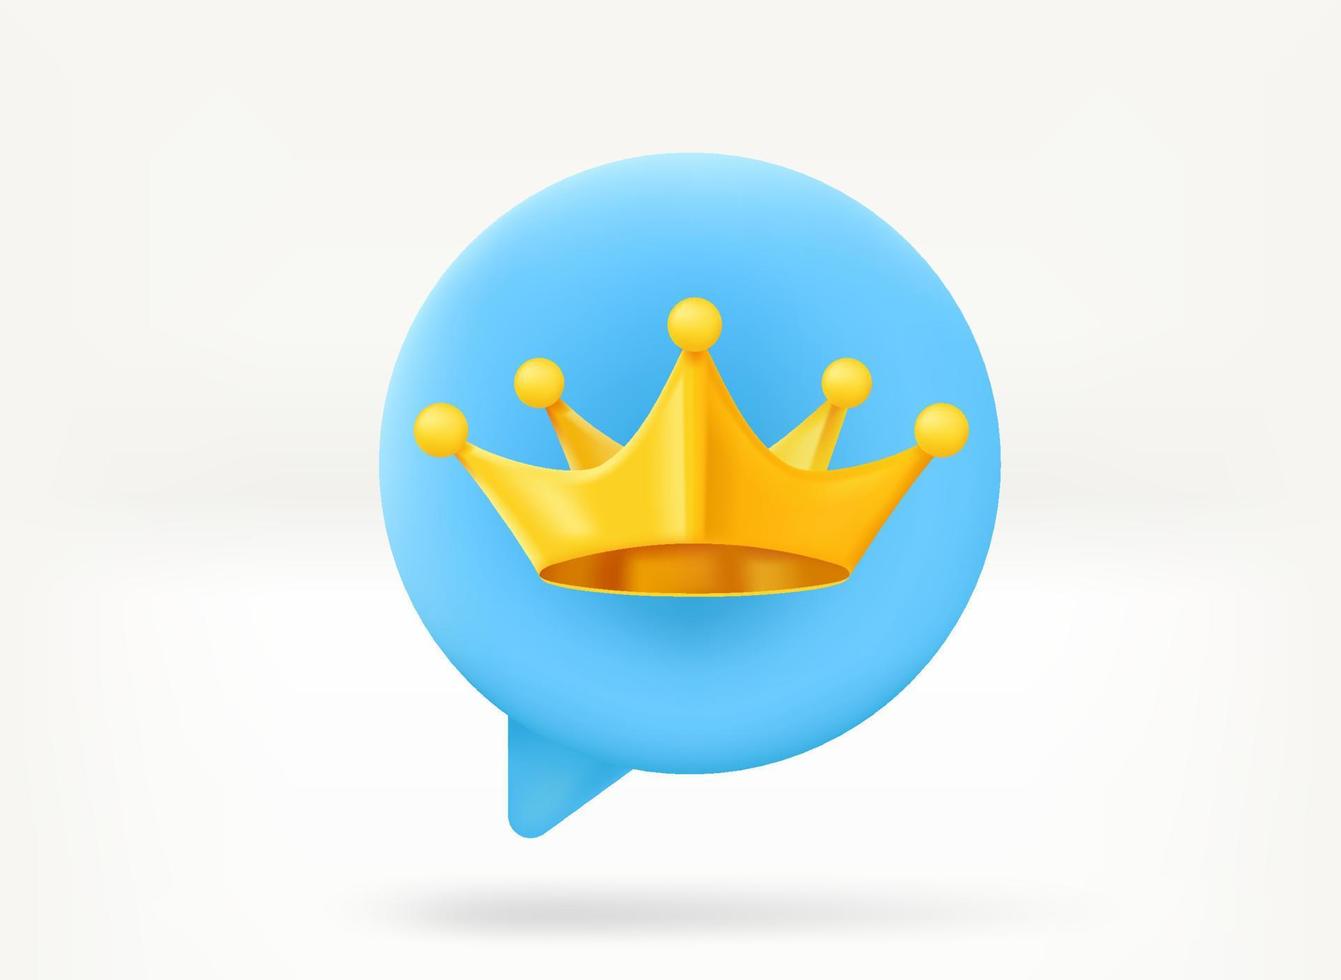 bolha de bate-papo com coroa real dourada. rei do conceito de comentário. ilustração vetorial 3D vetor